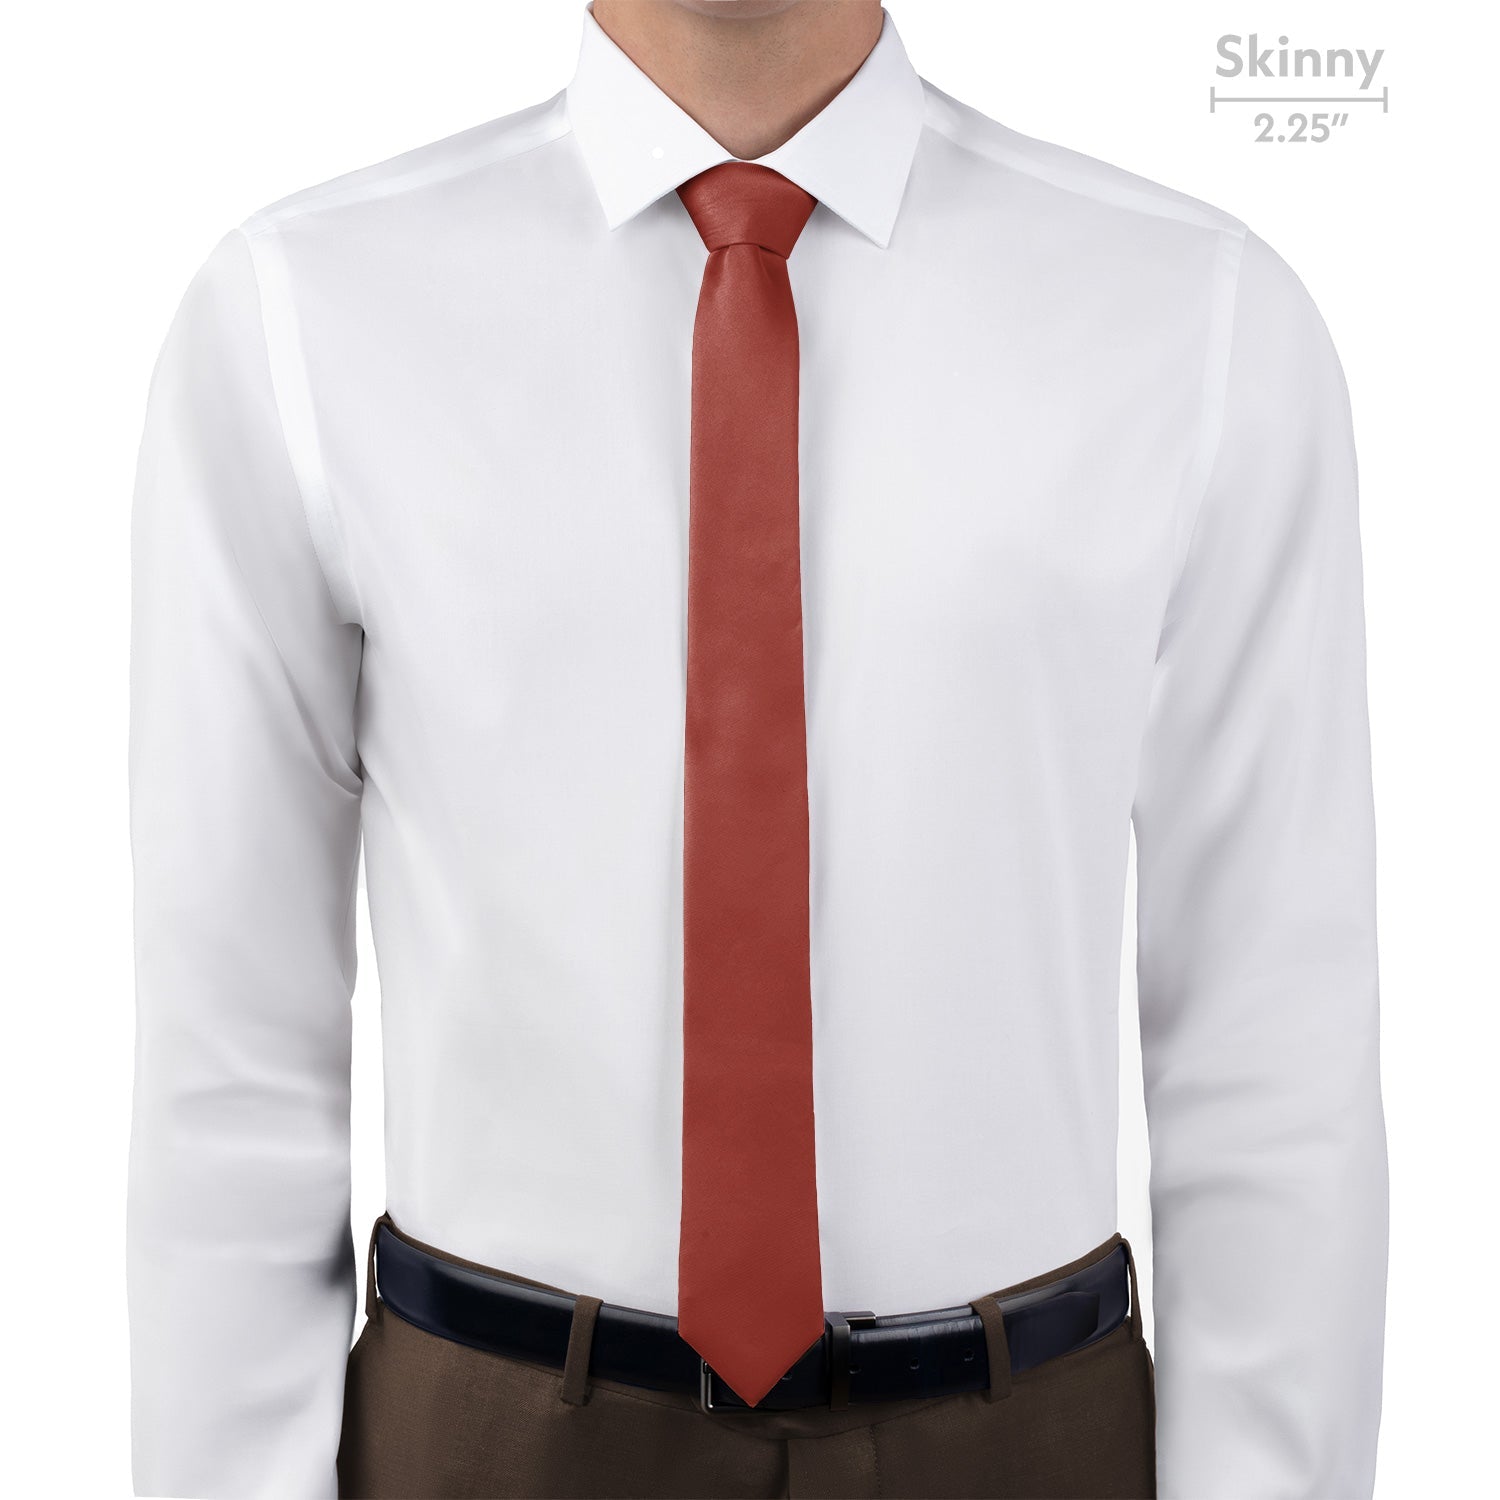 Azazie Terracotta Necktie - Skinny - Knotty Tie Co.